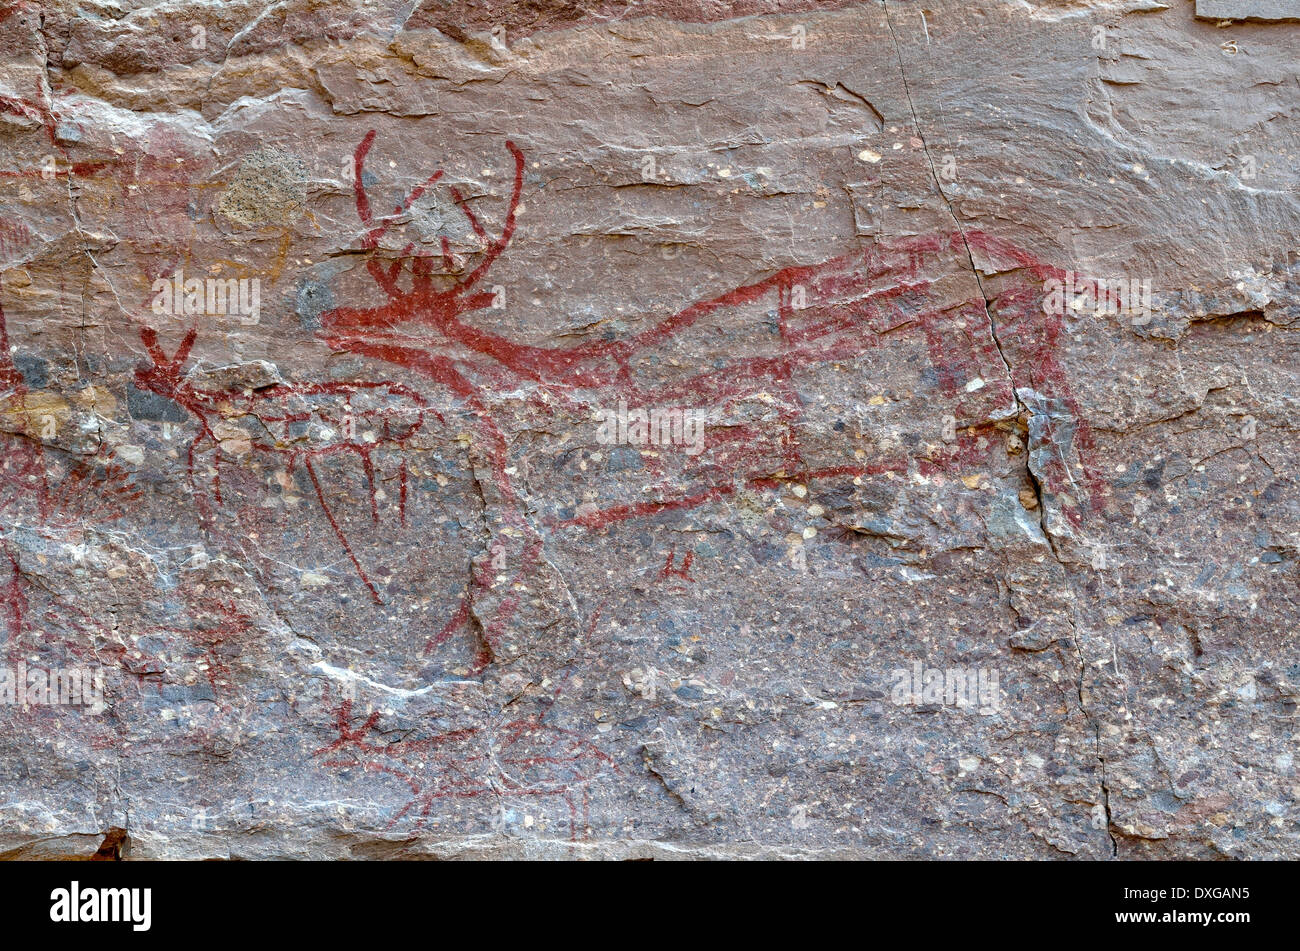 Cervi, dettaglio, storico pitture rupestri degli Indiani di varie tribù Cochimí, almeno 3500 anni, Canon de la Trinidad, Mulege Foto Stock